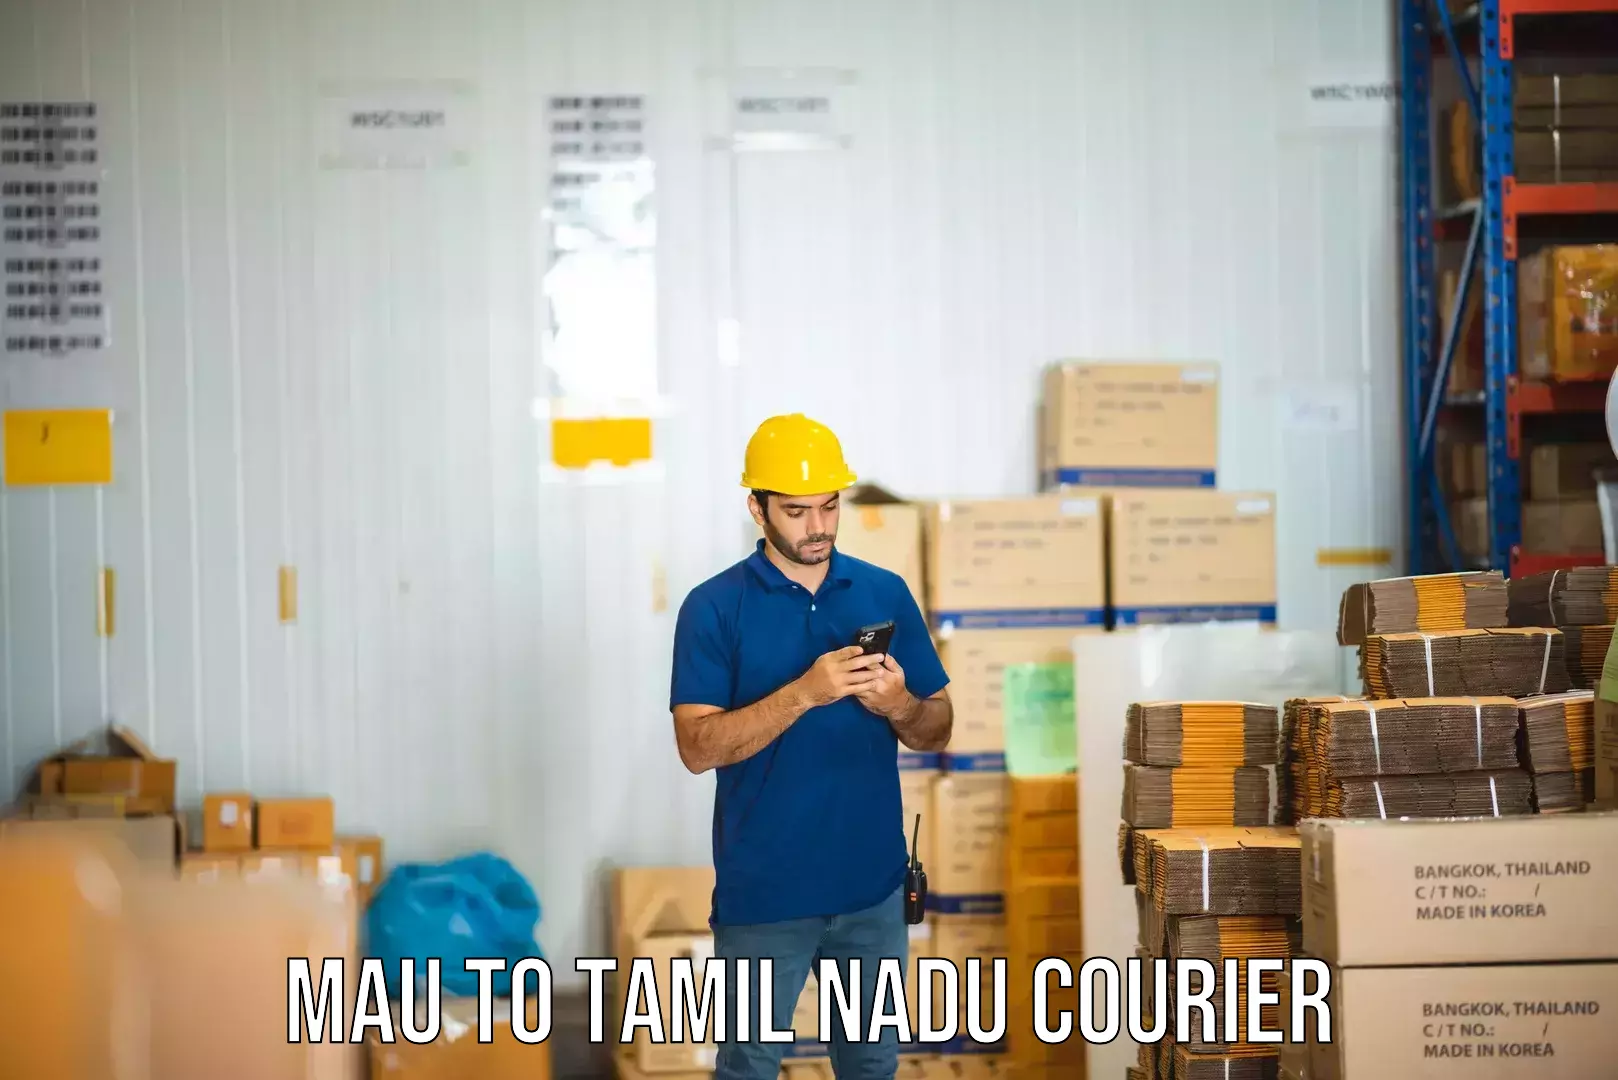 Global logistics network Mau to Tiruchendur